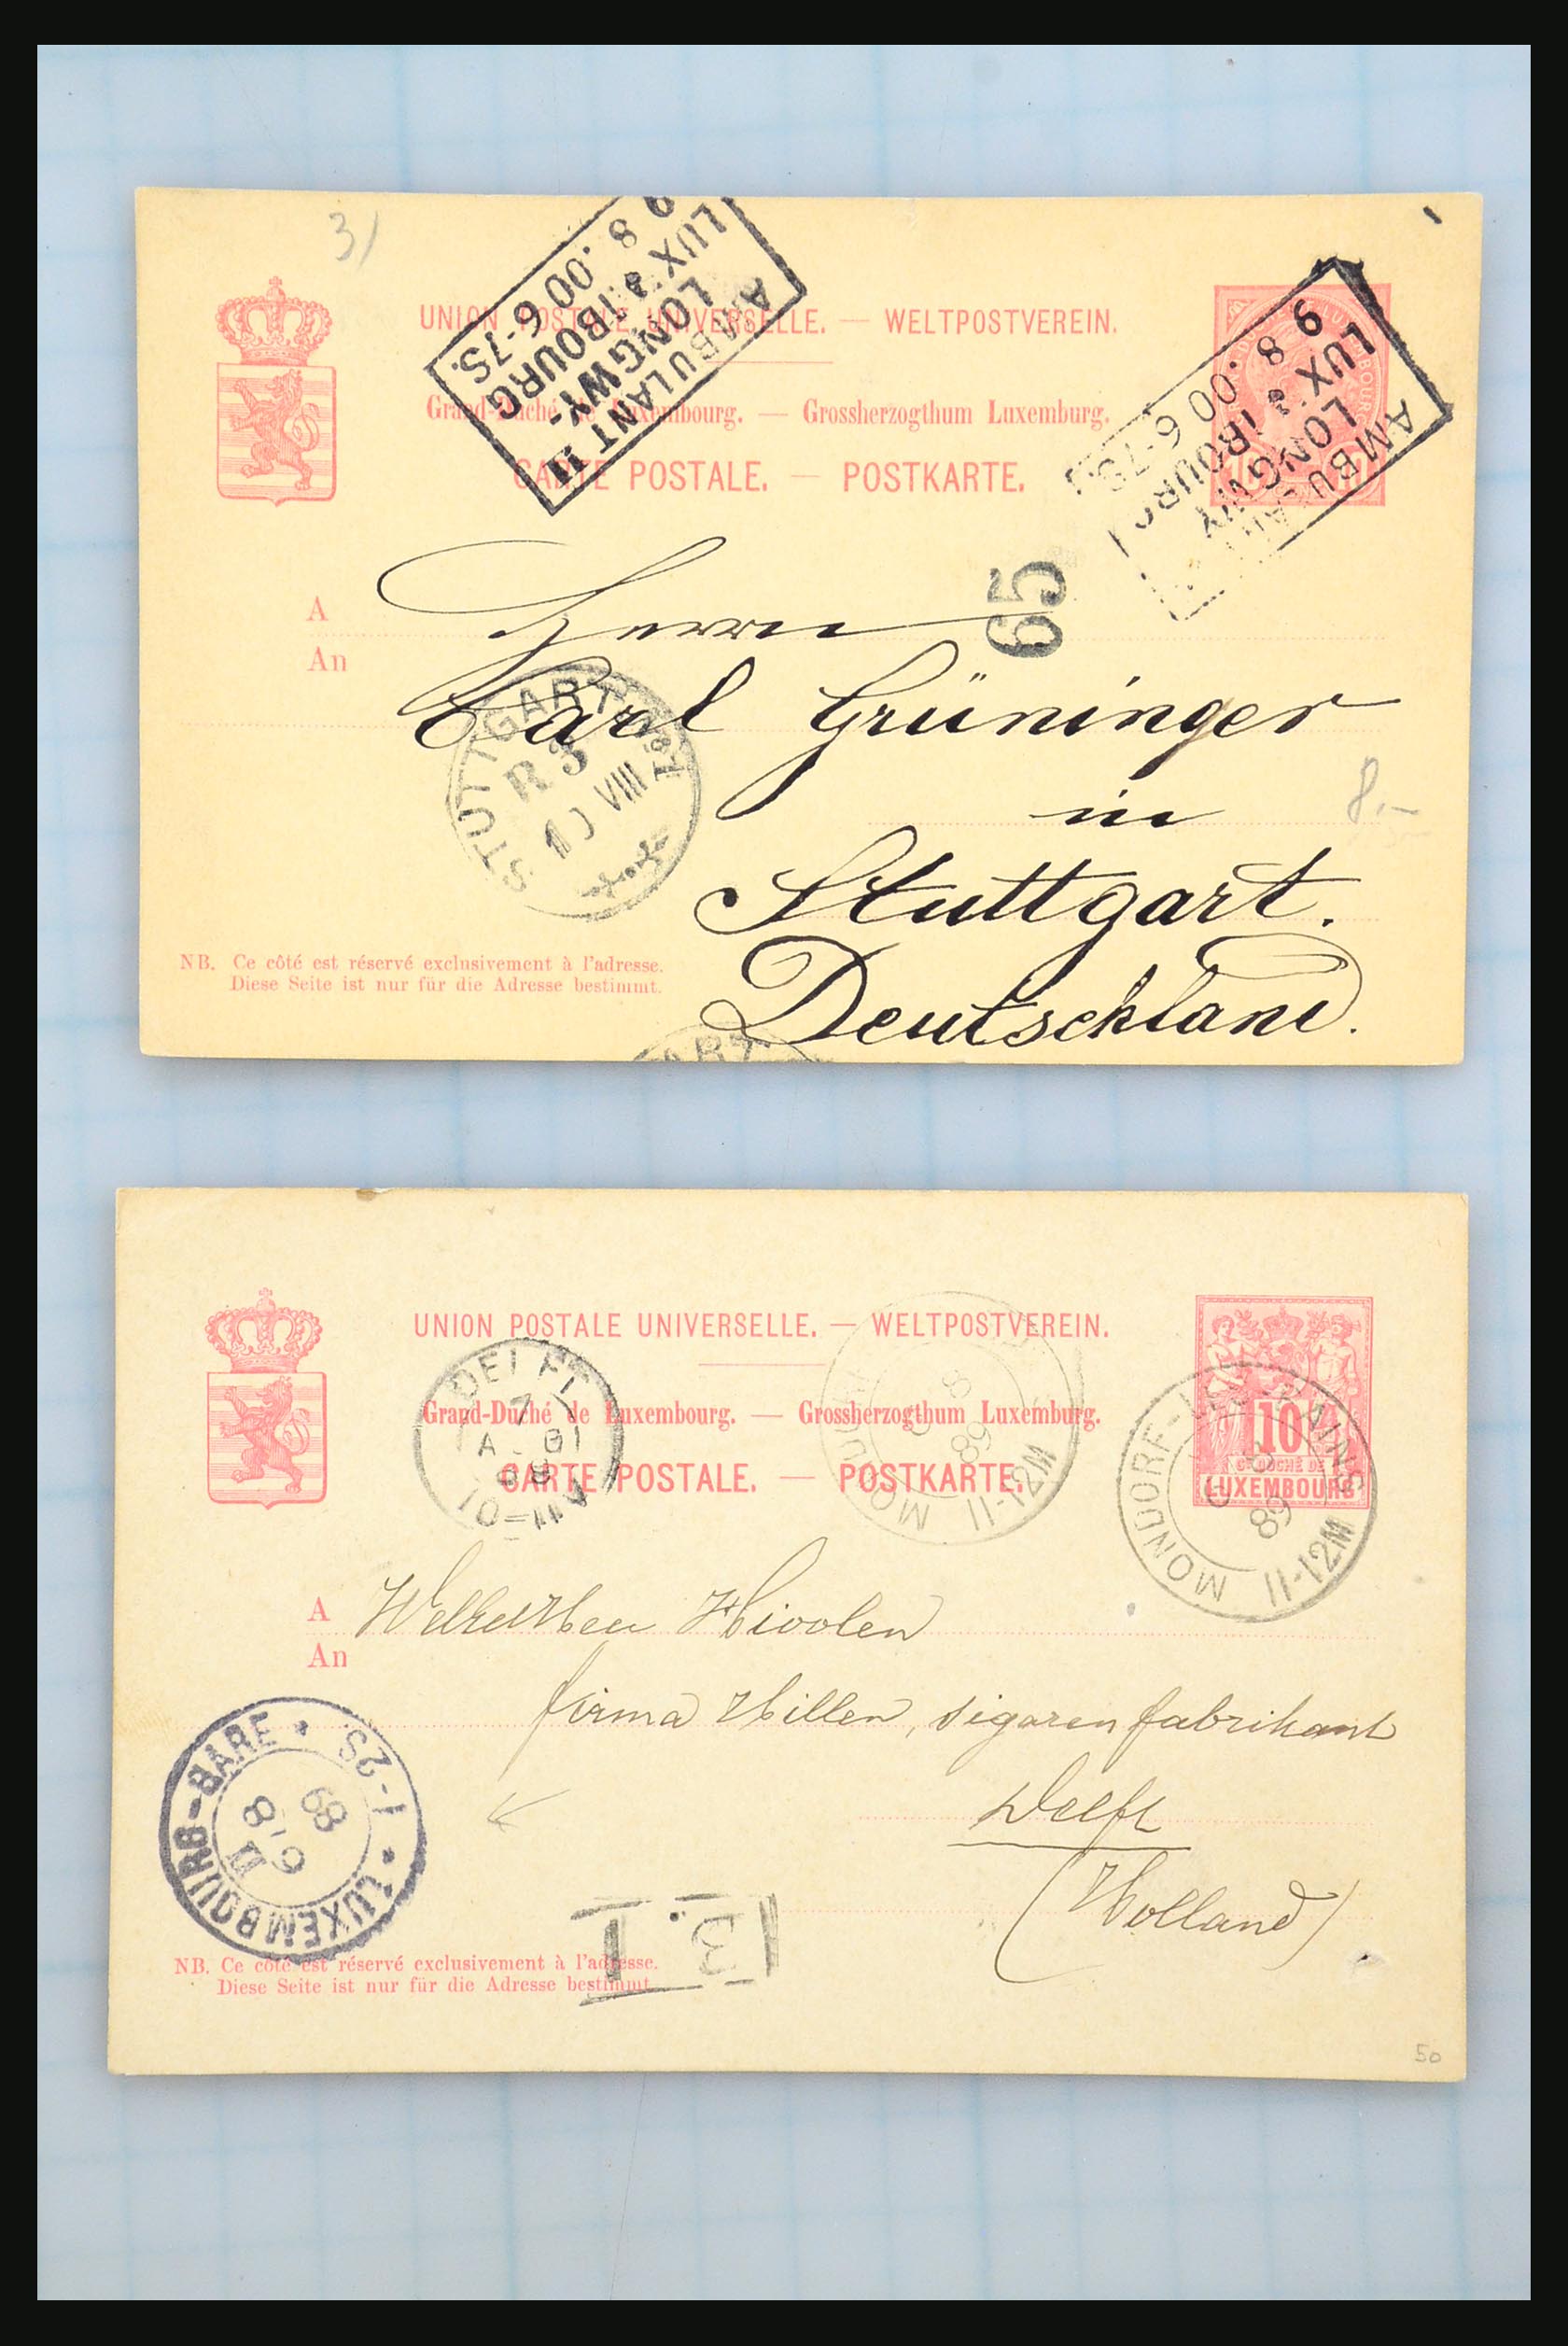 31358 096 - 31358 Portugal/Luxemburg/Griekenland brieven 1880-1960.